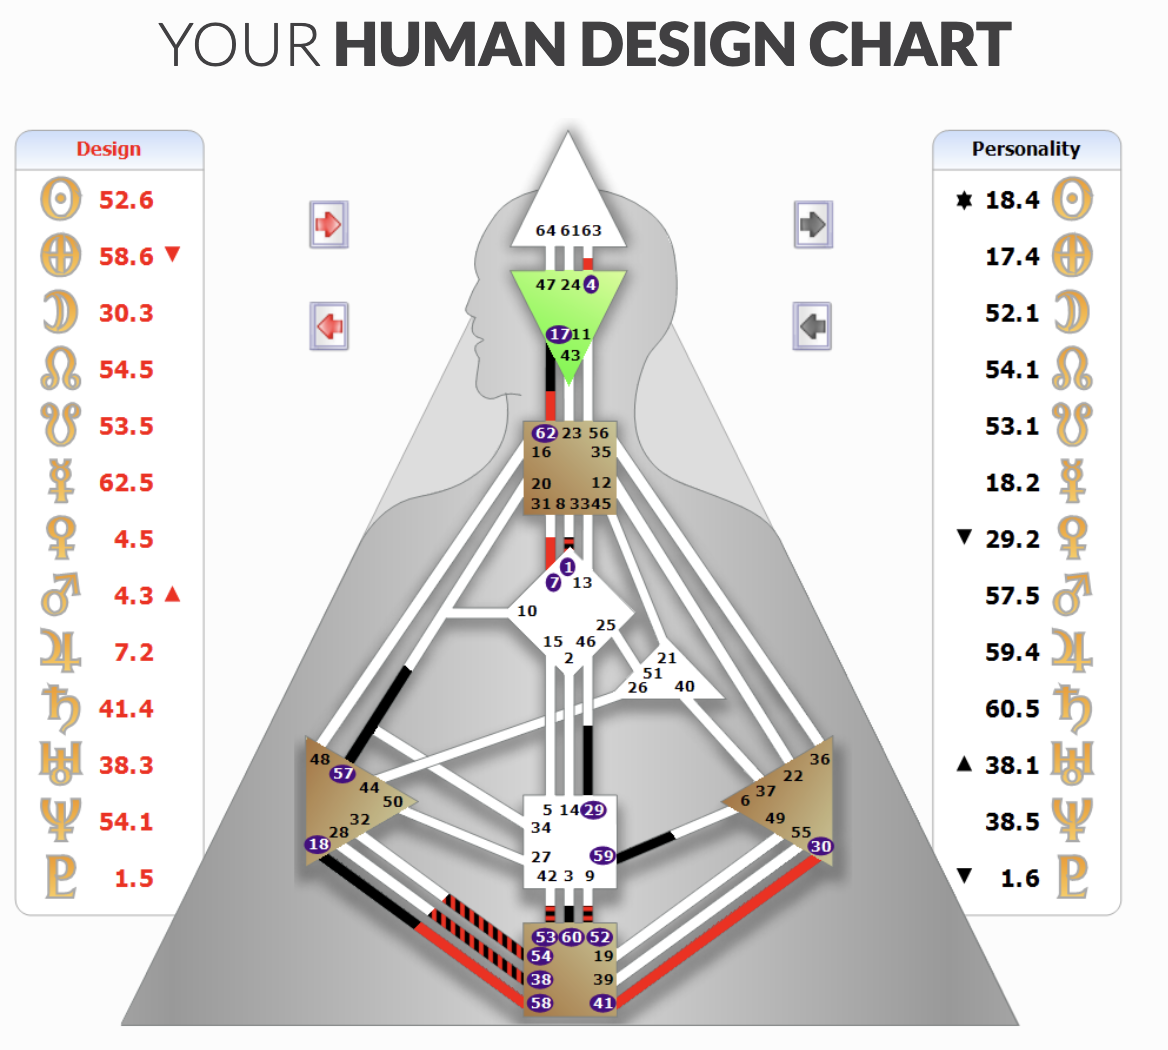 Хьюмен систем. ХЬЮМАН дизайн. Хьюмен дизайн человека. Лица богов дизайн человека. Известные проекторы дизайн человека.